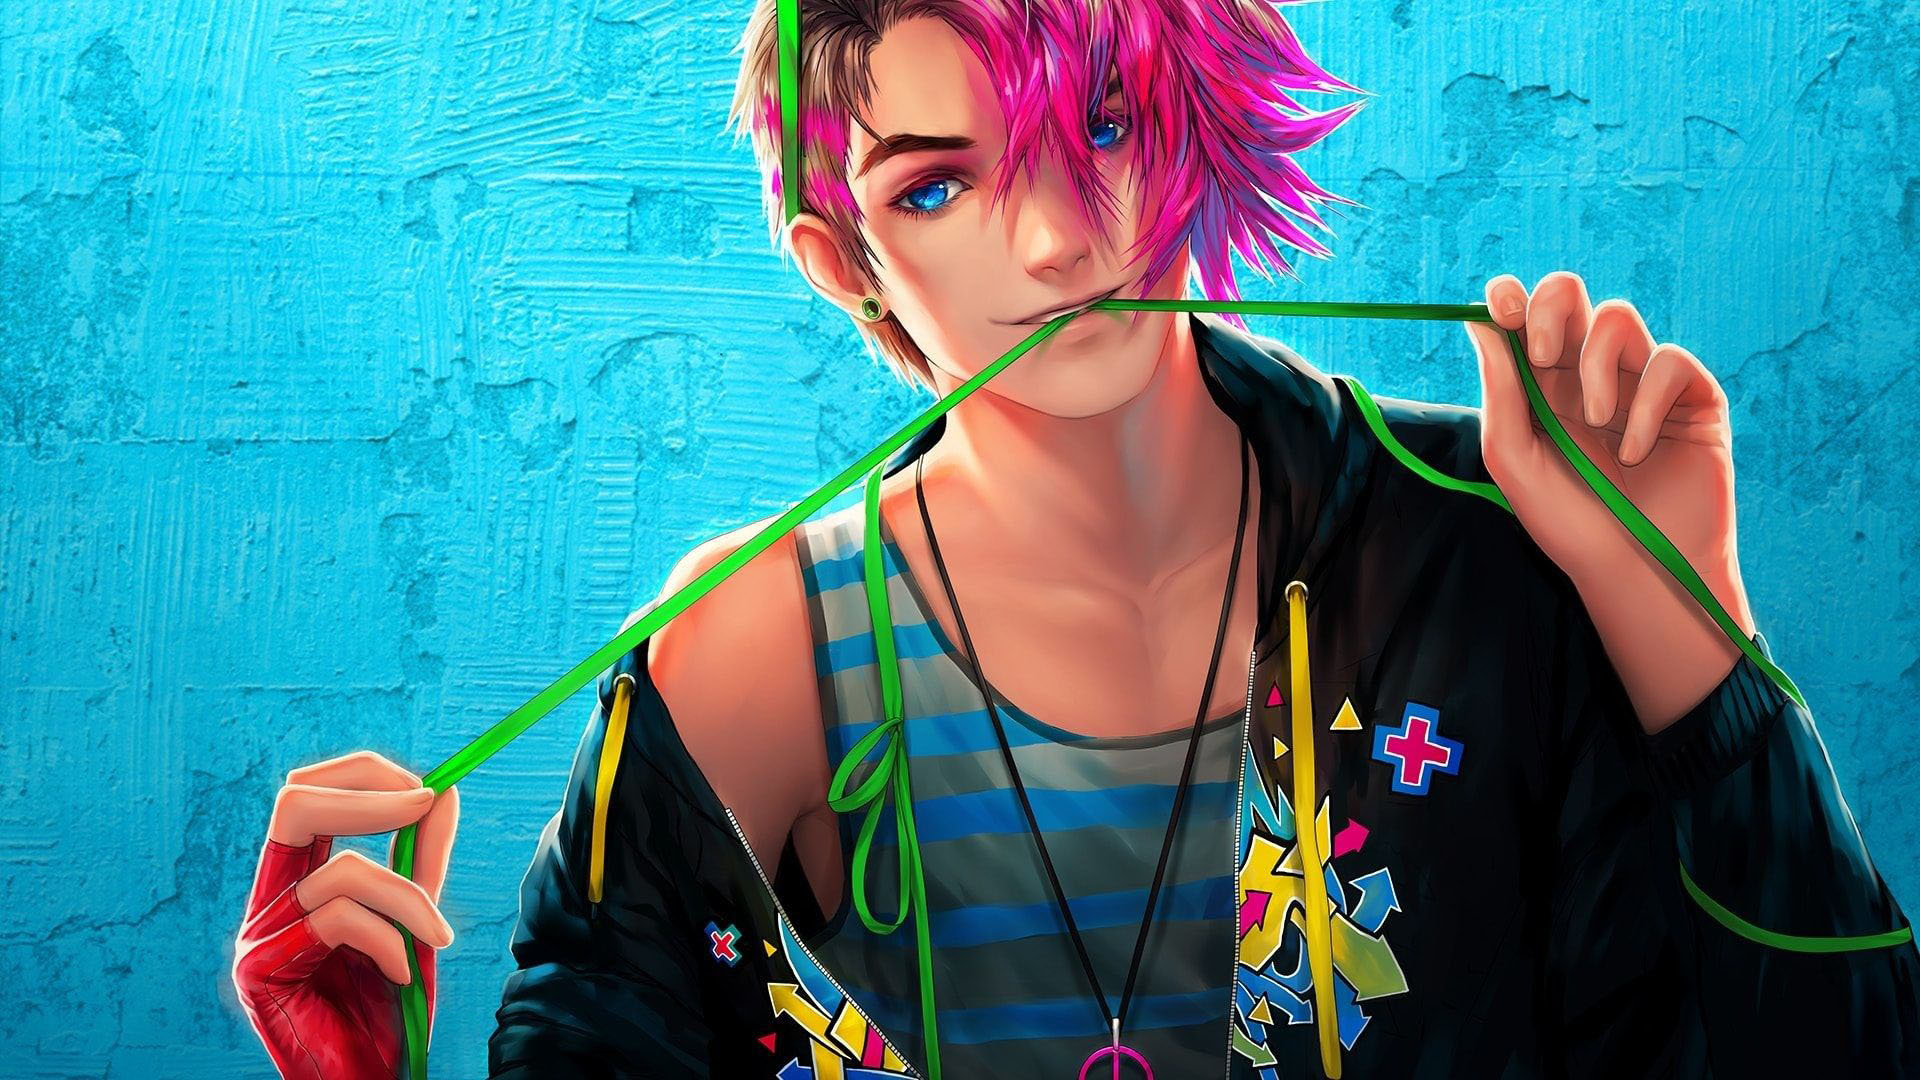 Anime Boy Wallpaper 4K by DarkEdgeYT on DeviantArt